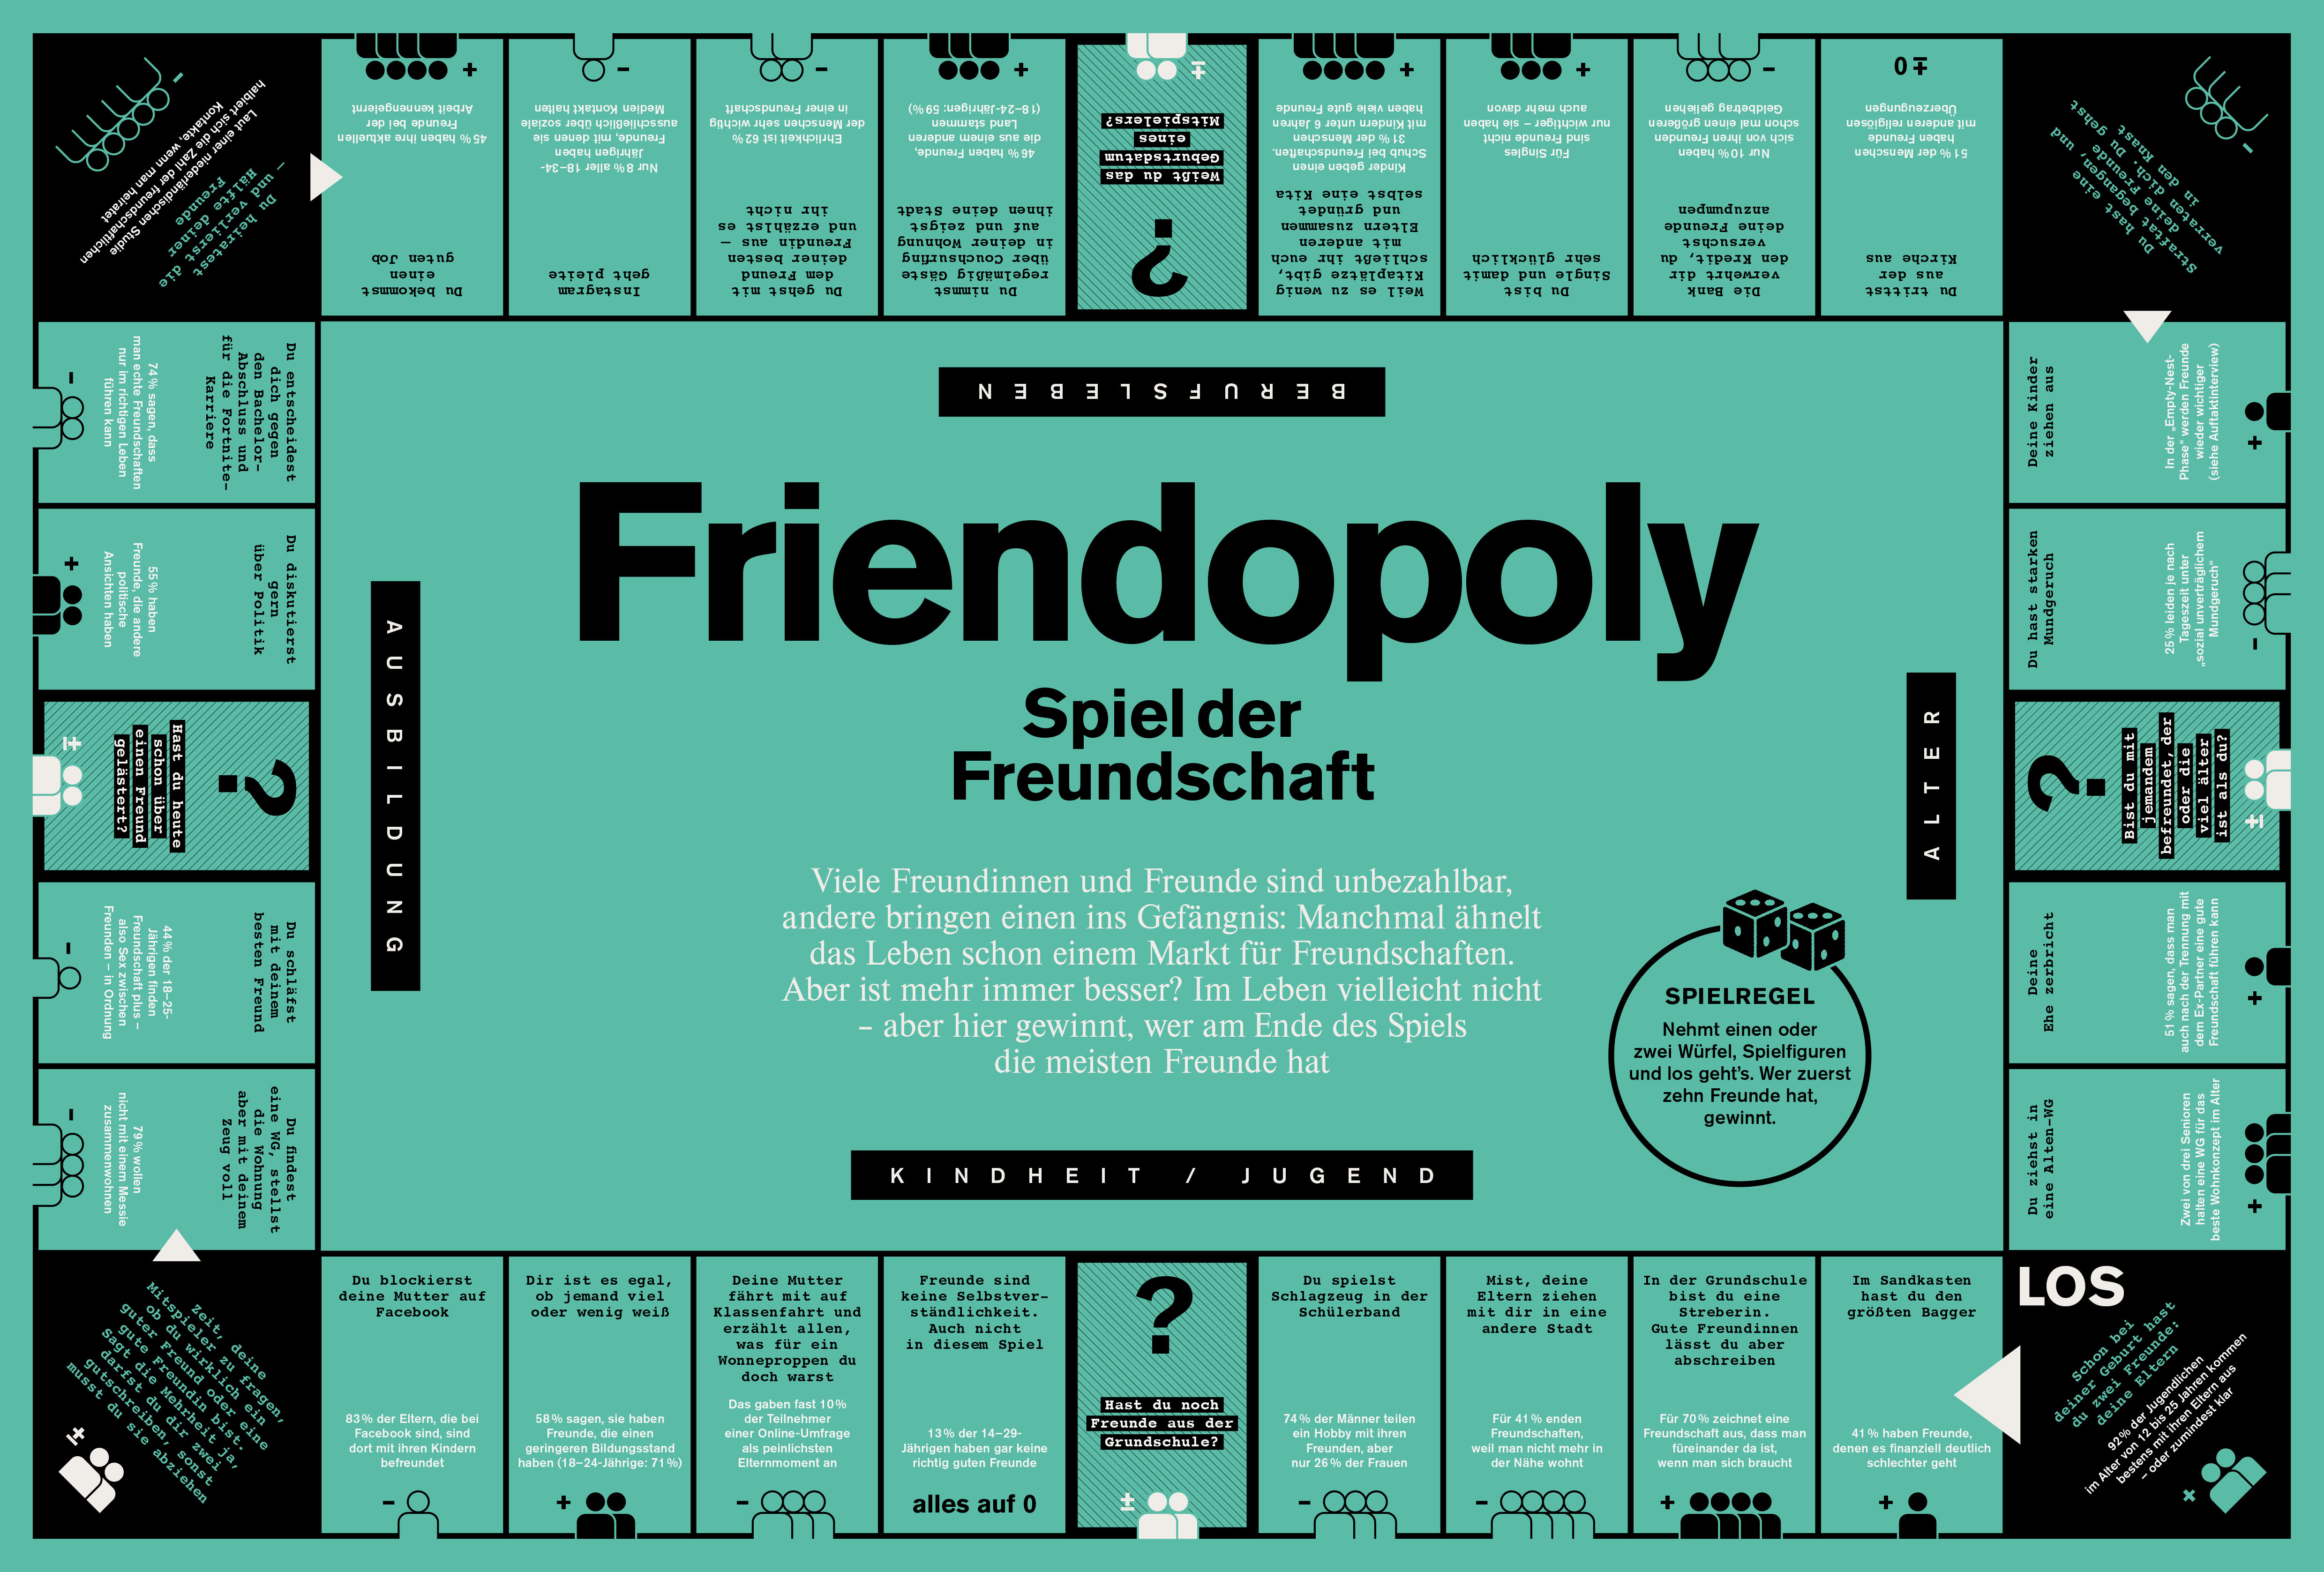 Friendopoly – Das Spiel der Freundschaft